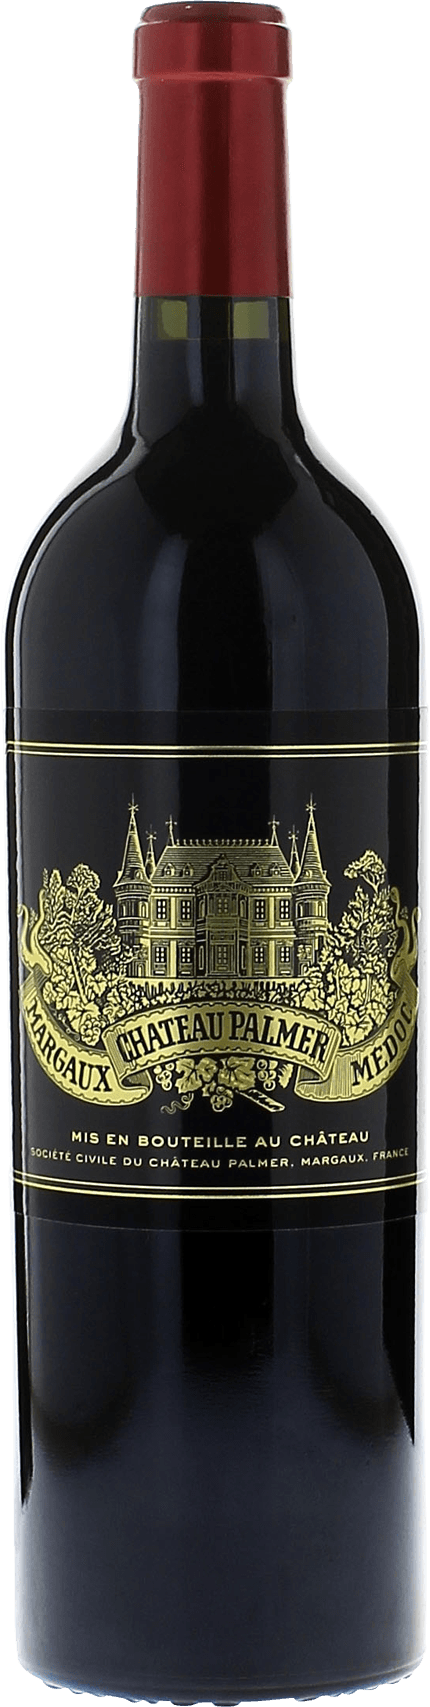 Palmer margaux 2015 3me Grand cru class Margaux, Bordeaux rouge